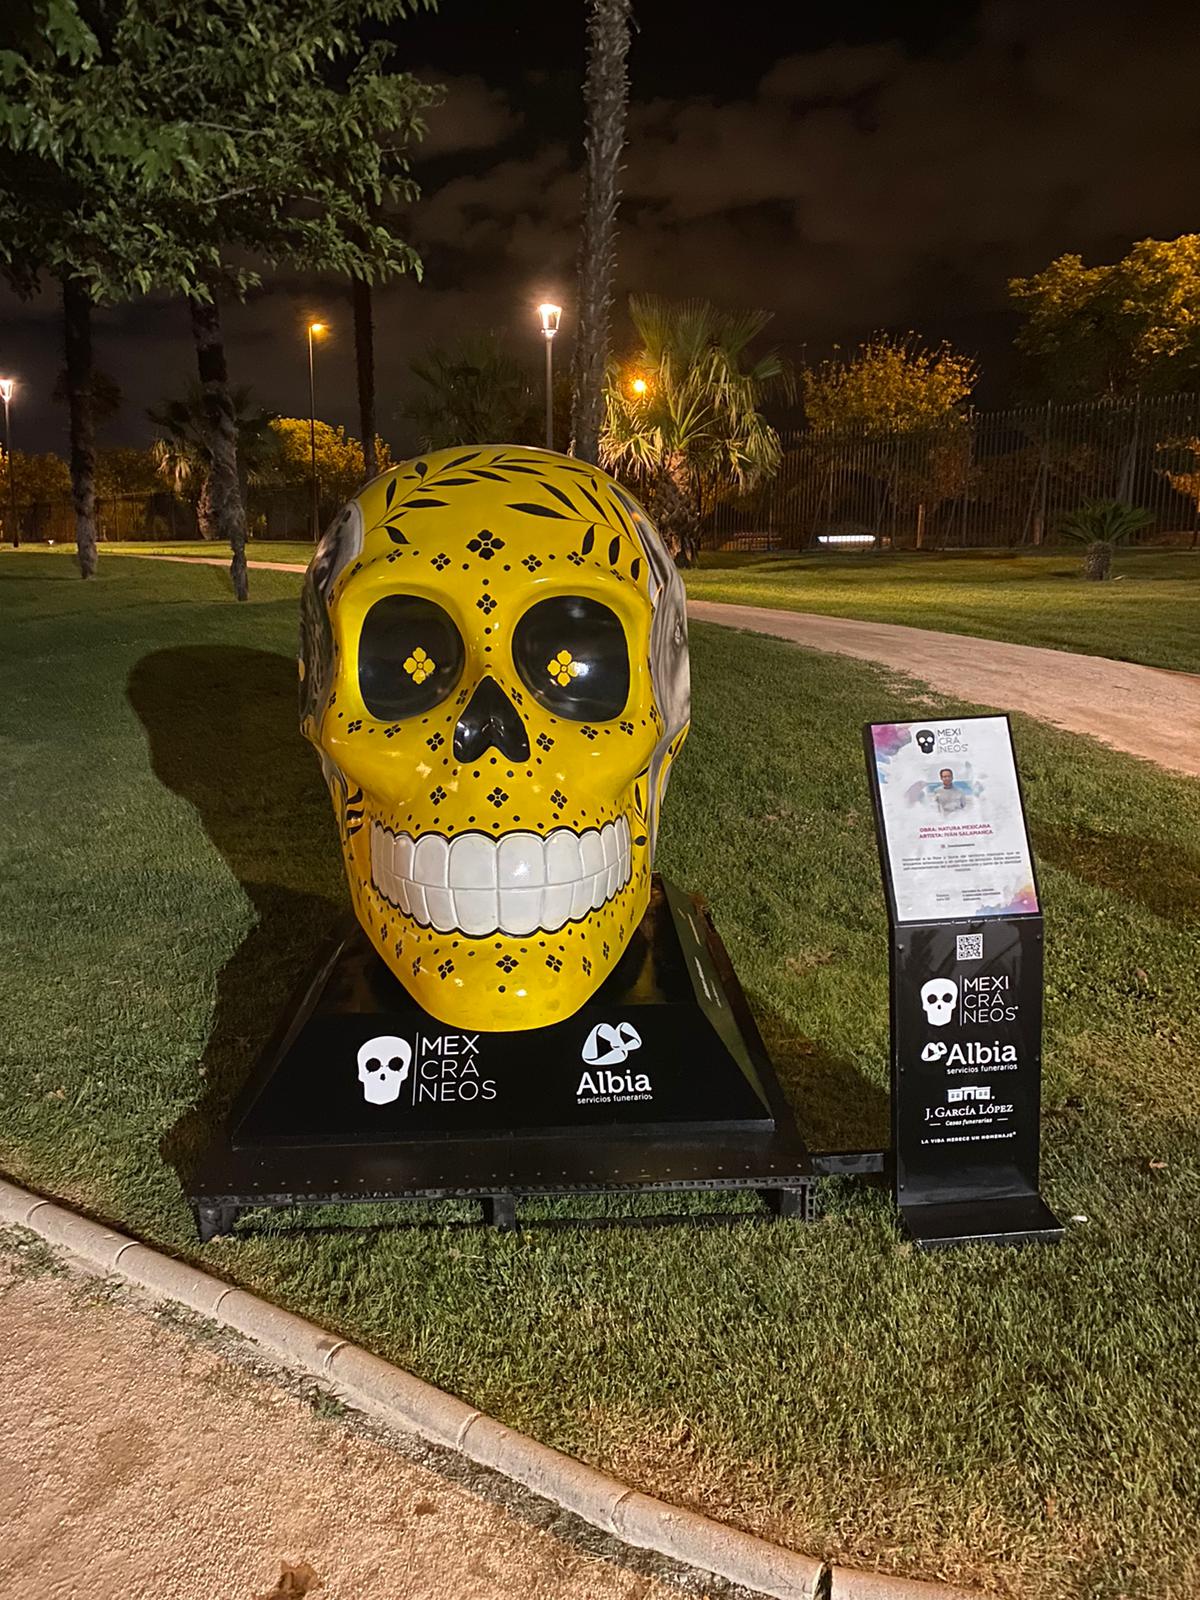 Torrejón de Ardoz, primera ciudad de España en acoger la exposición internacional de arte urbano “Mexicráneos” en el Parque Europa del 10 de septiembre al 2 de noviembre